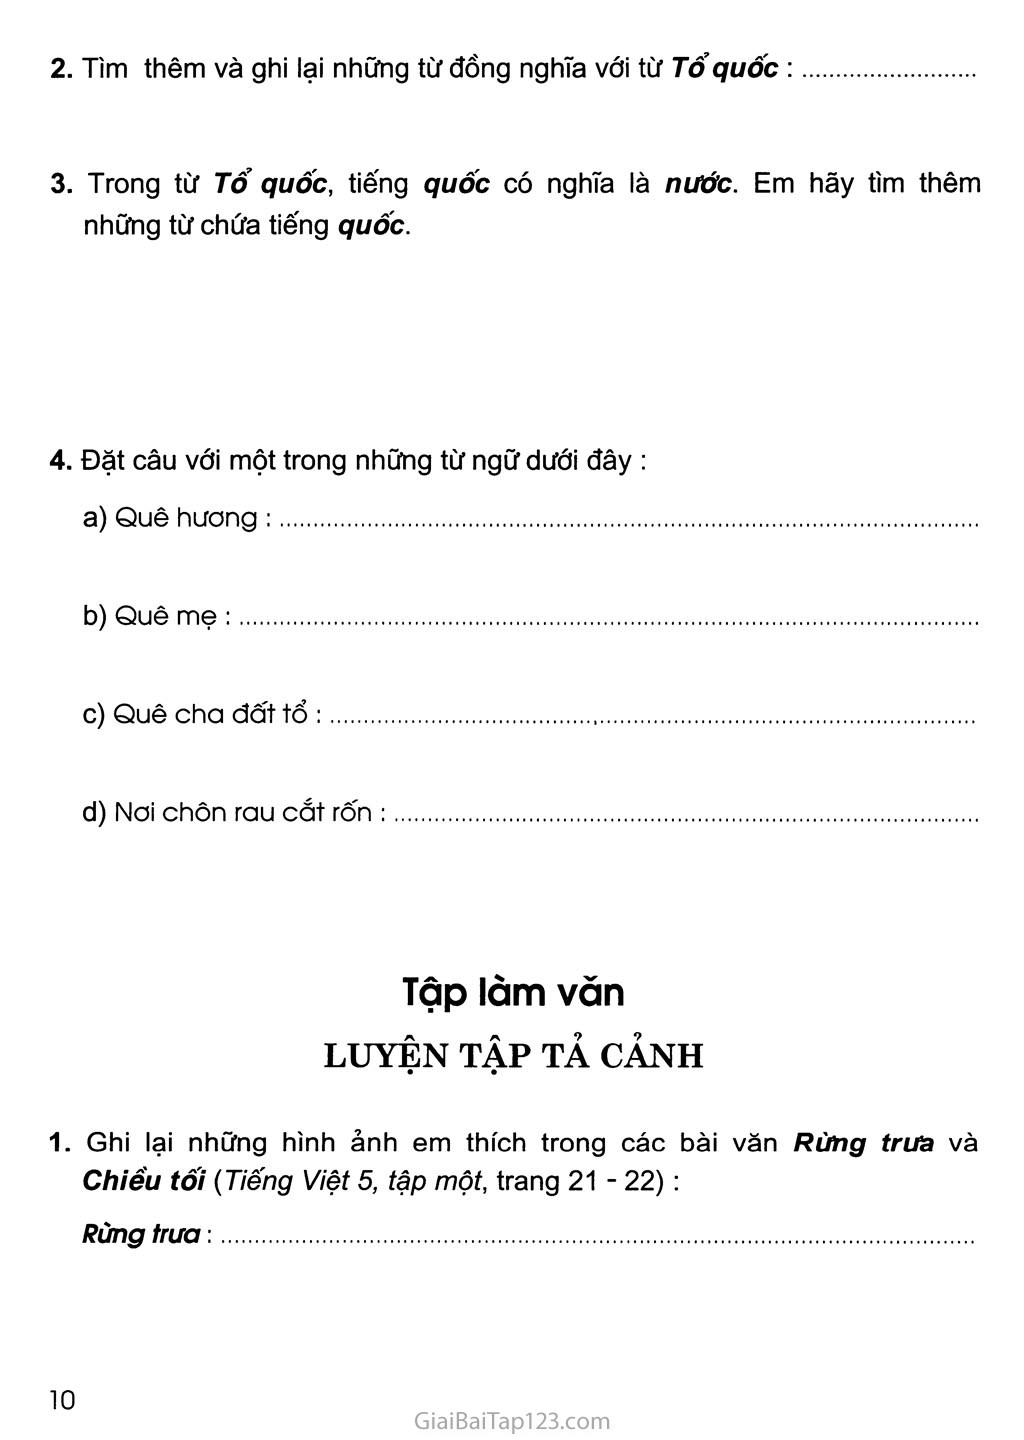 Tuần 2 - Chủ điểm: Việt Nam - Tổ quốc em trang 3